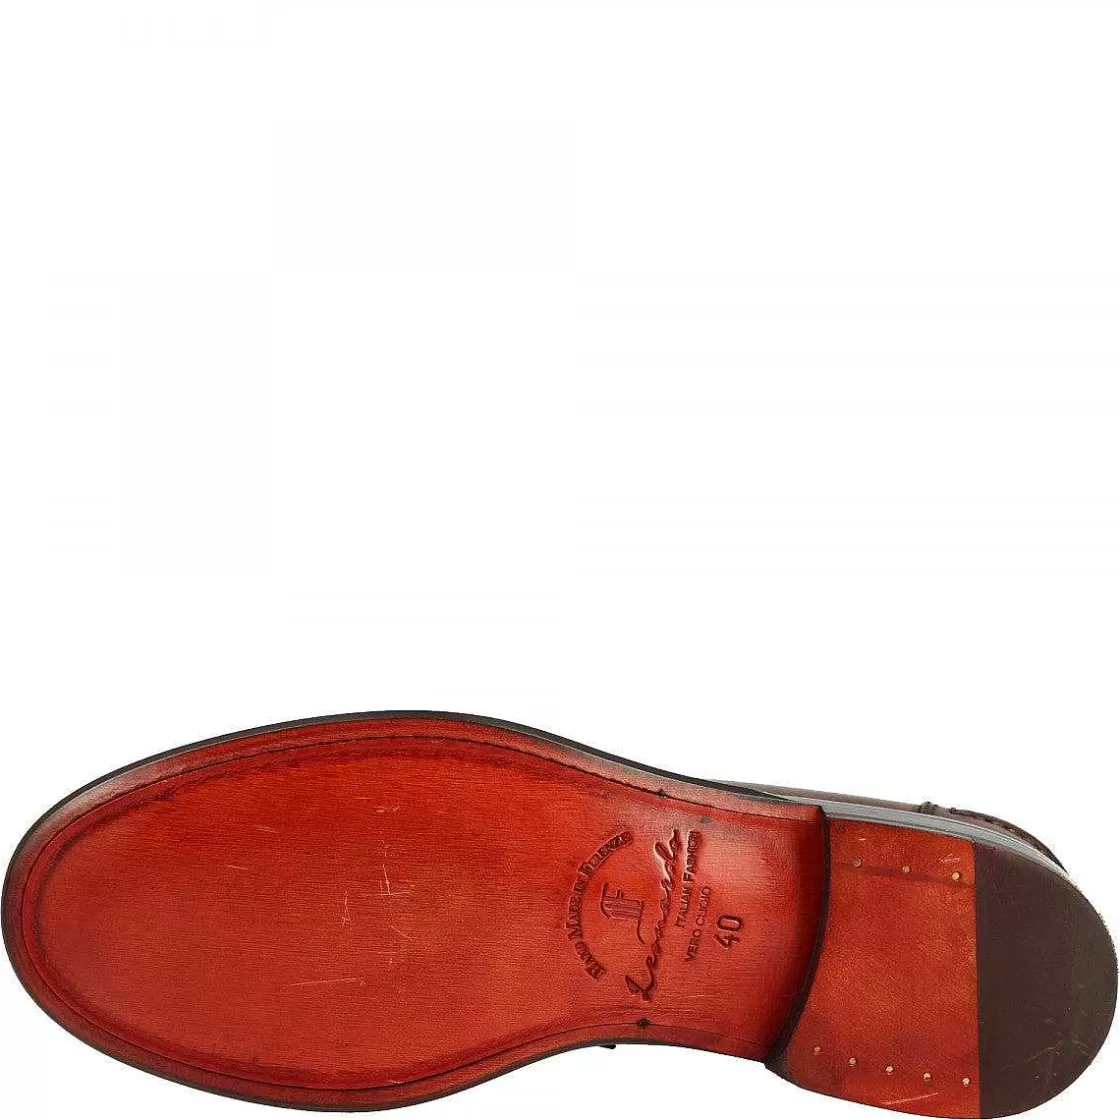 Leonardo Men'S Handmade Formal Slip-On Loafers In Brandy Leather Outlet